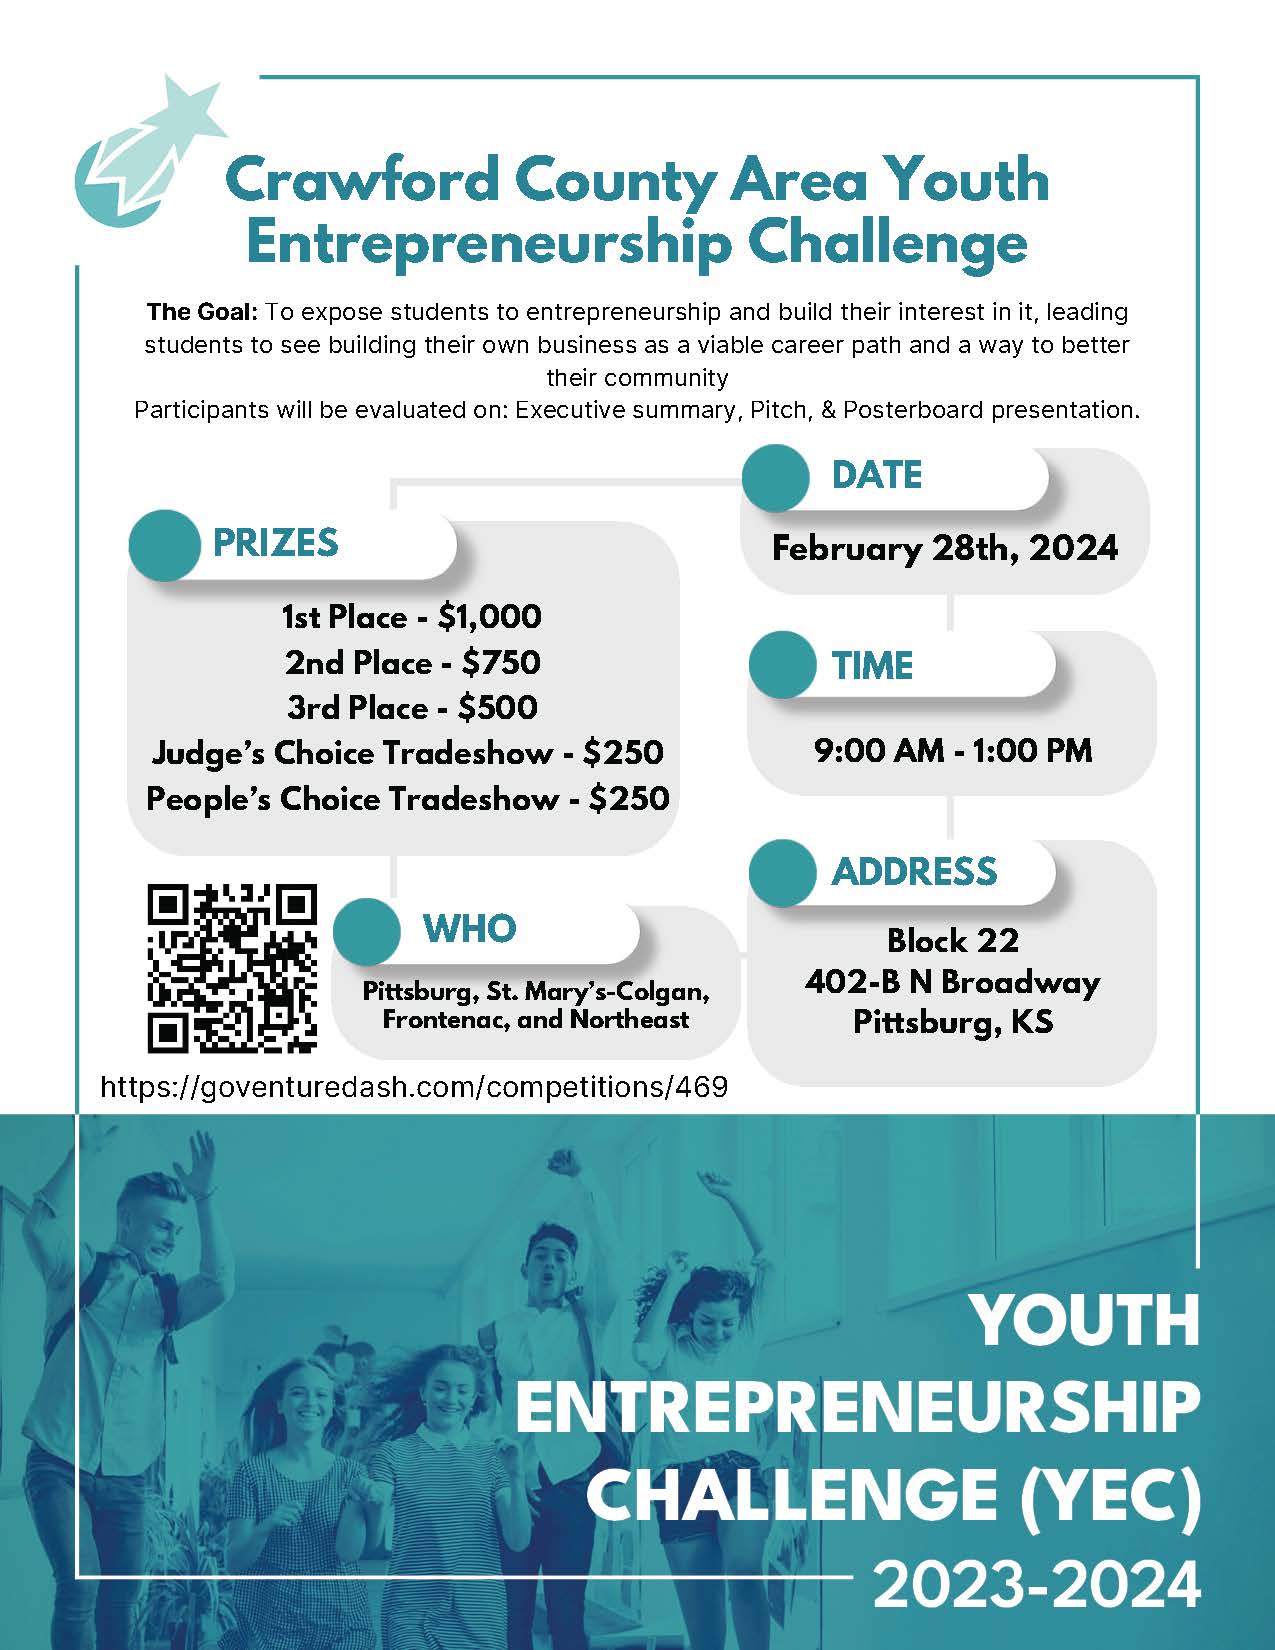 Youth Entrepreneurship Challenge (YEC)